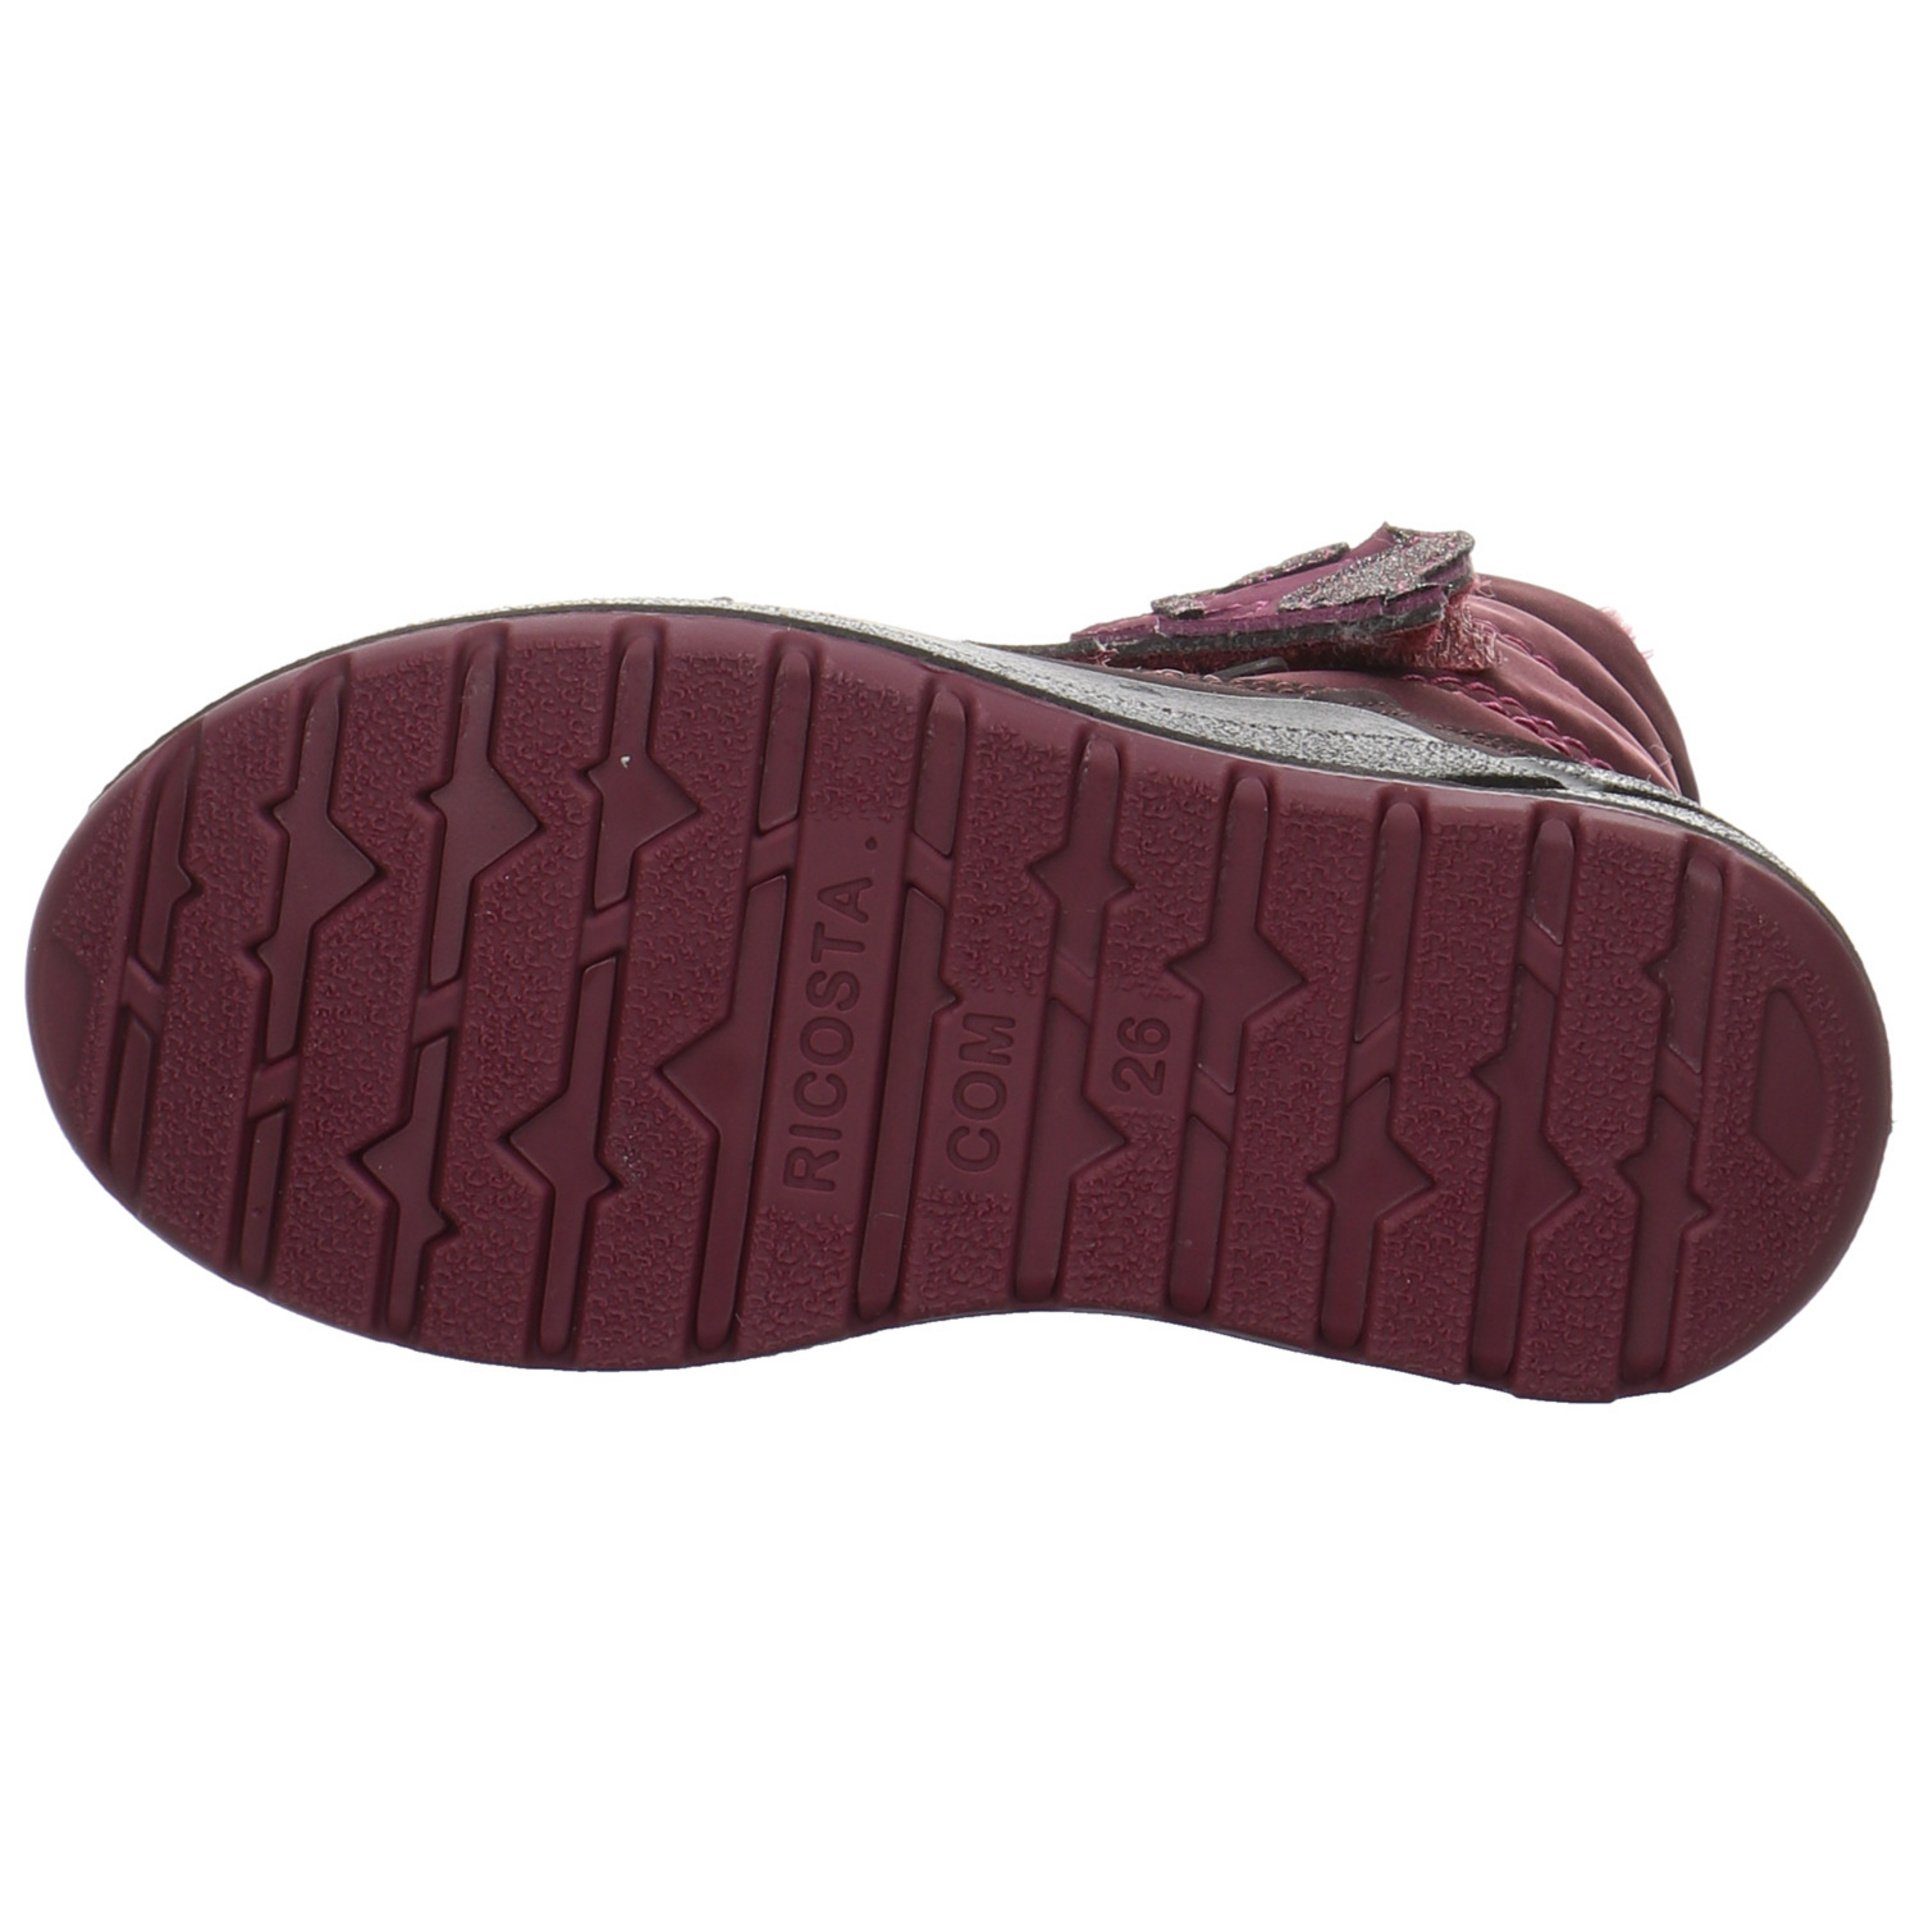 Ricosta Garei Boots Textil Bordeaux Textil Stiefel uni